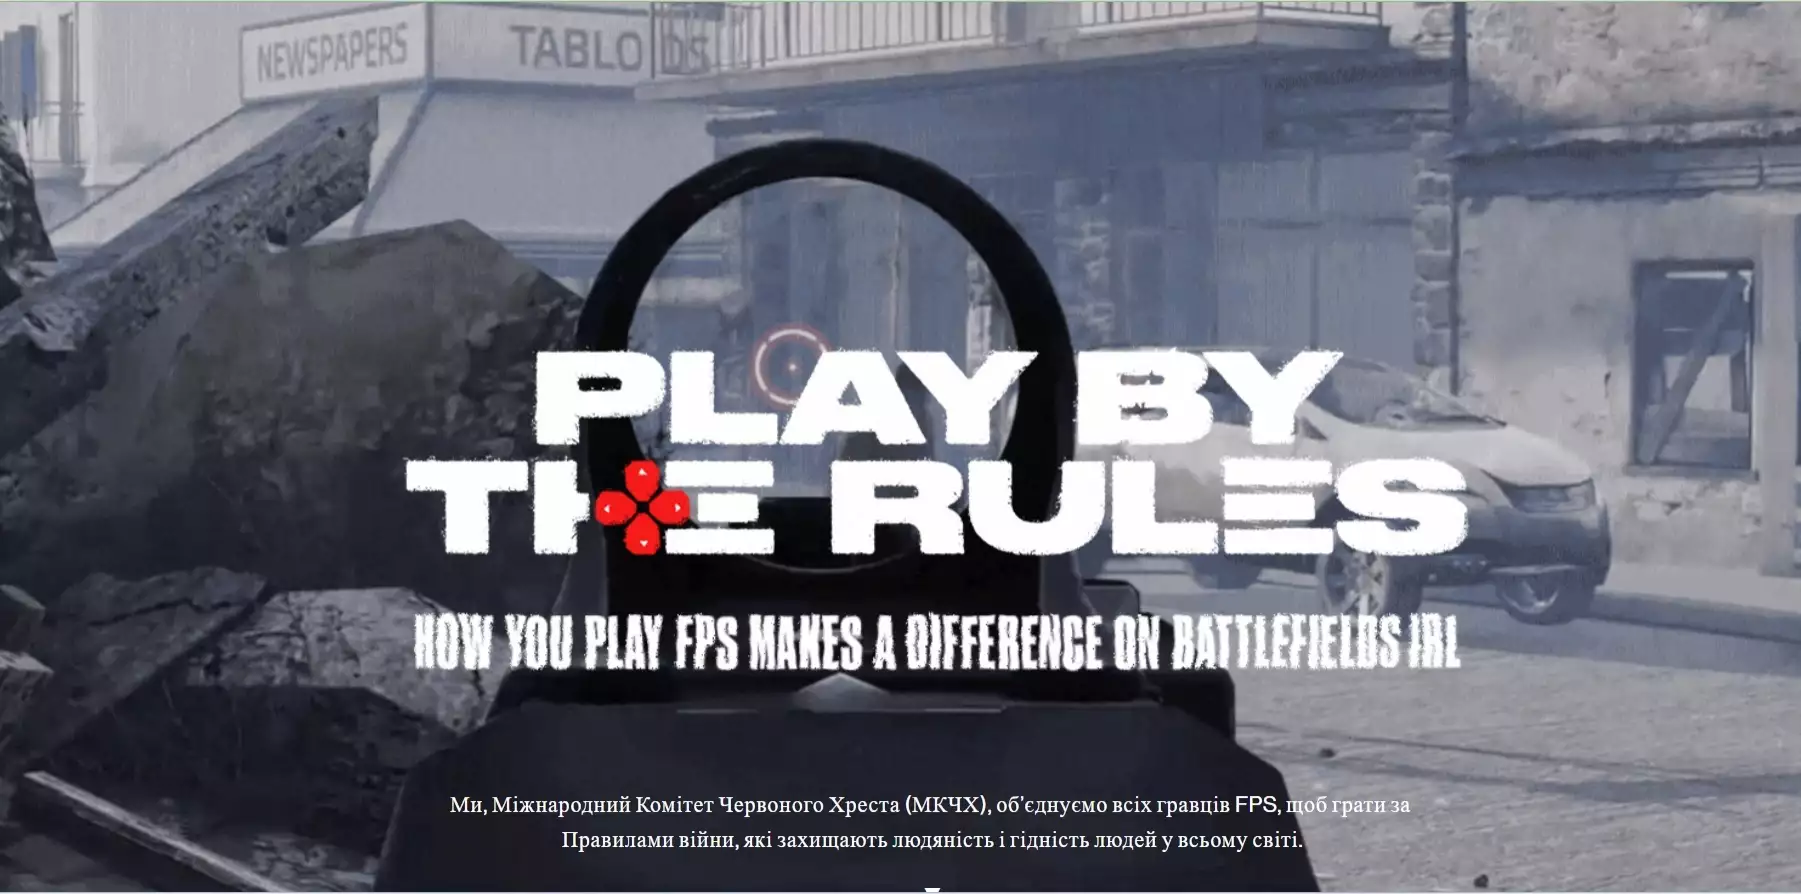 Міжнародний комітет Червоного Хреста закликав геймерів не чинити віртуальних воєнних злочинів